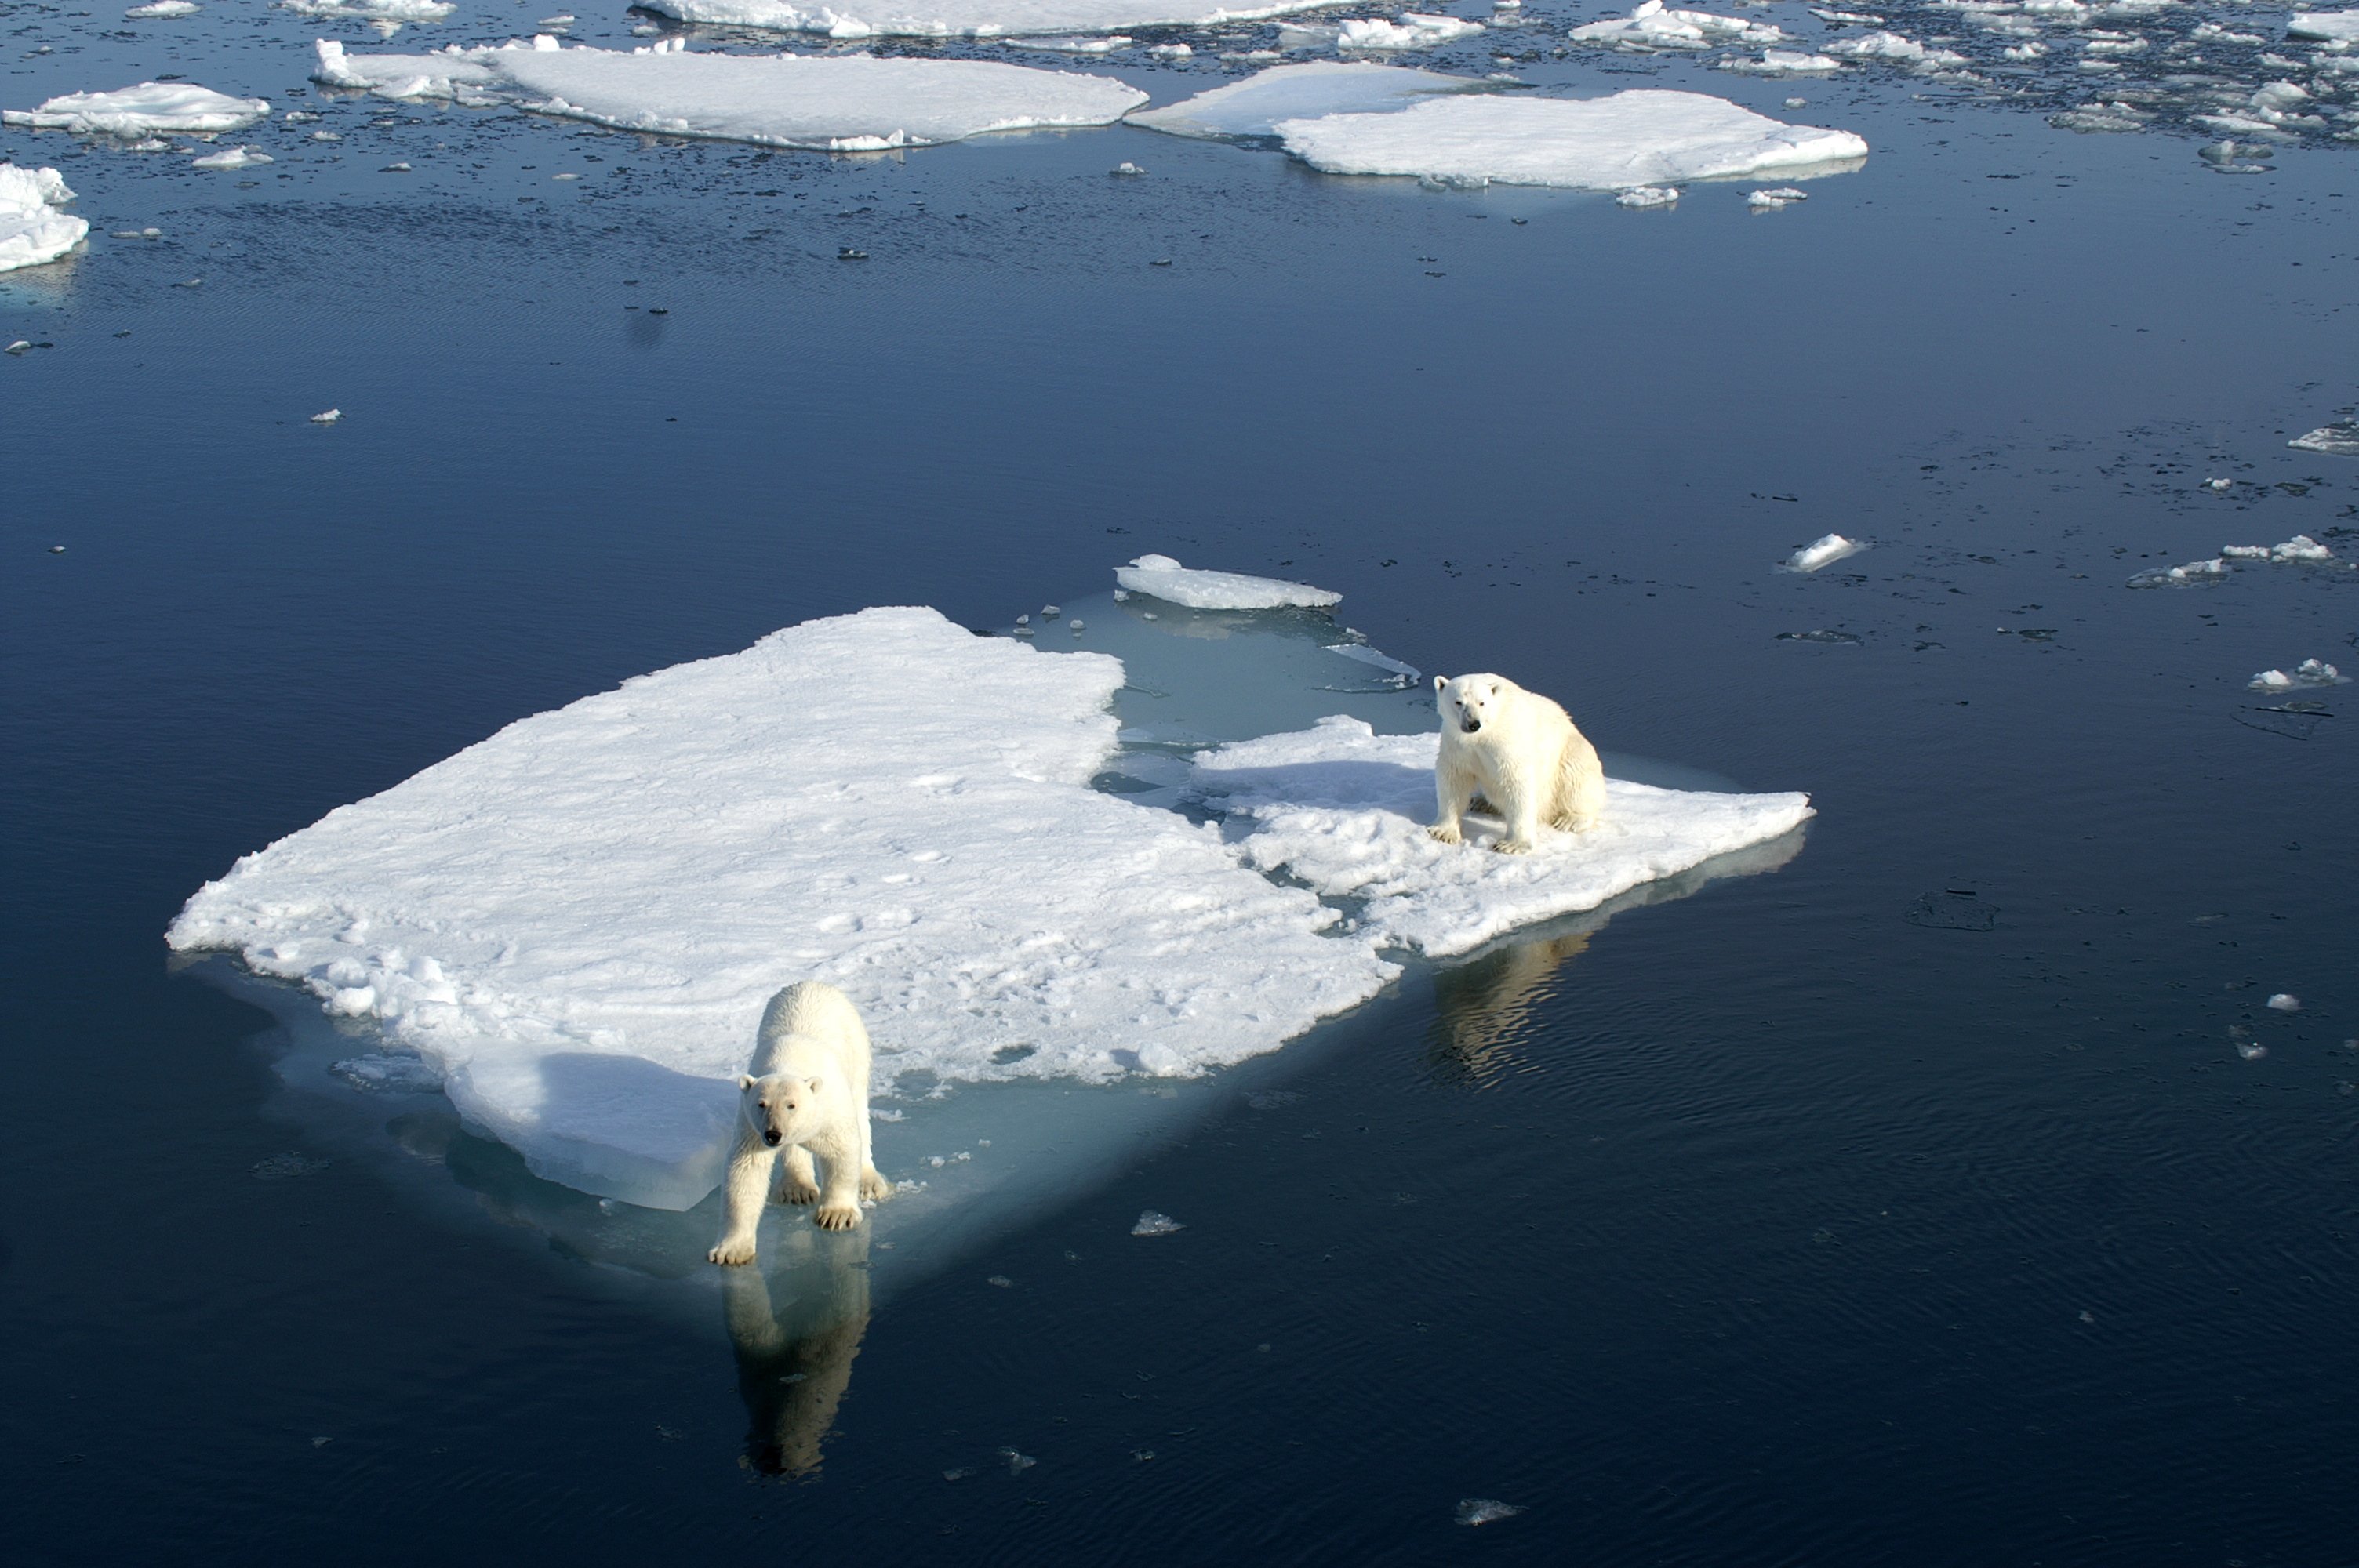 Des températures positives au Pôle Nord au lieu des -20 degrés habituels